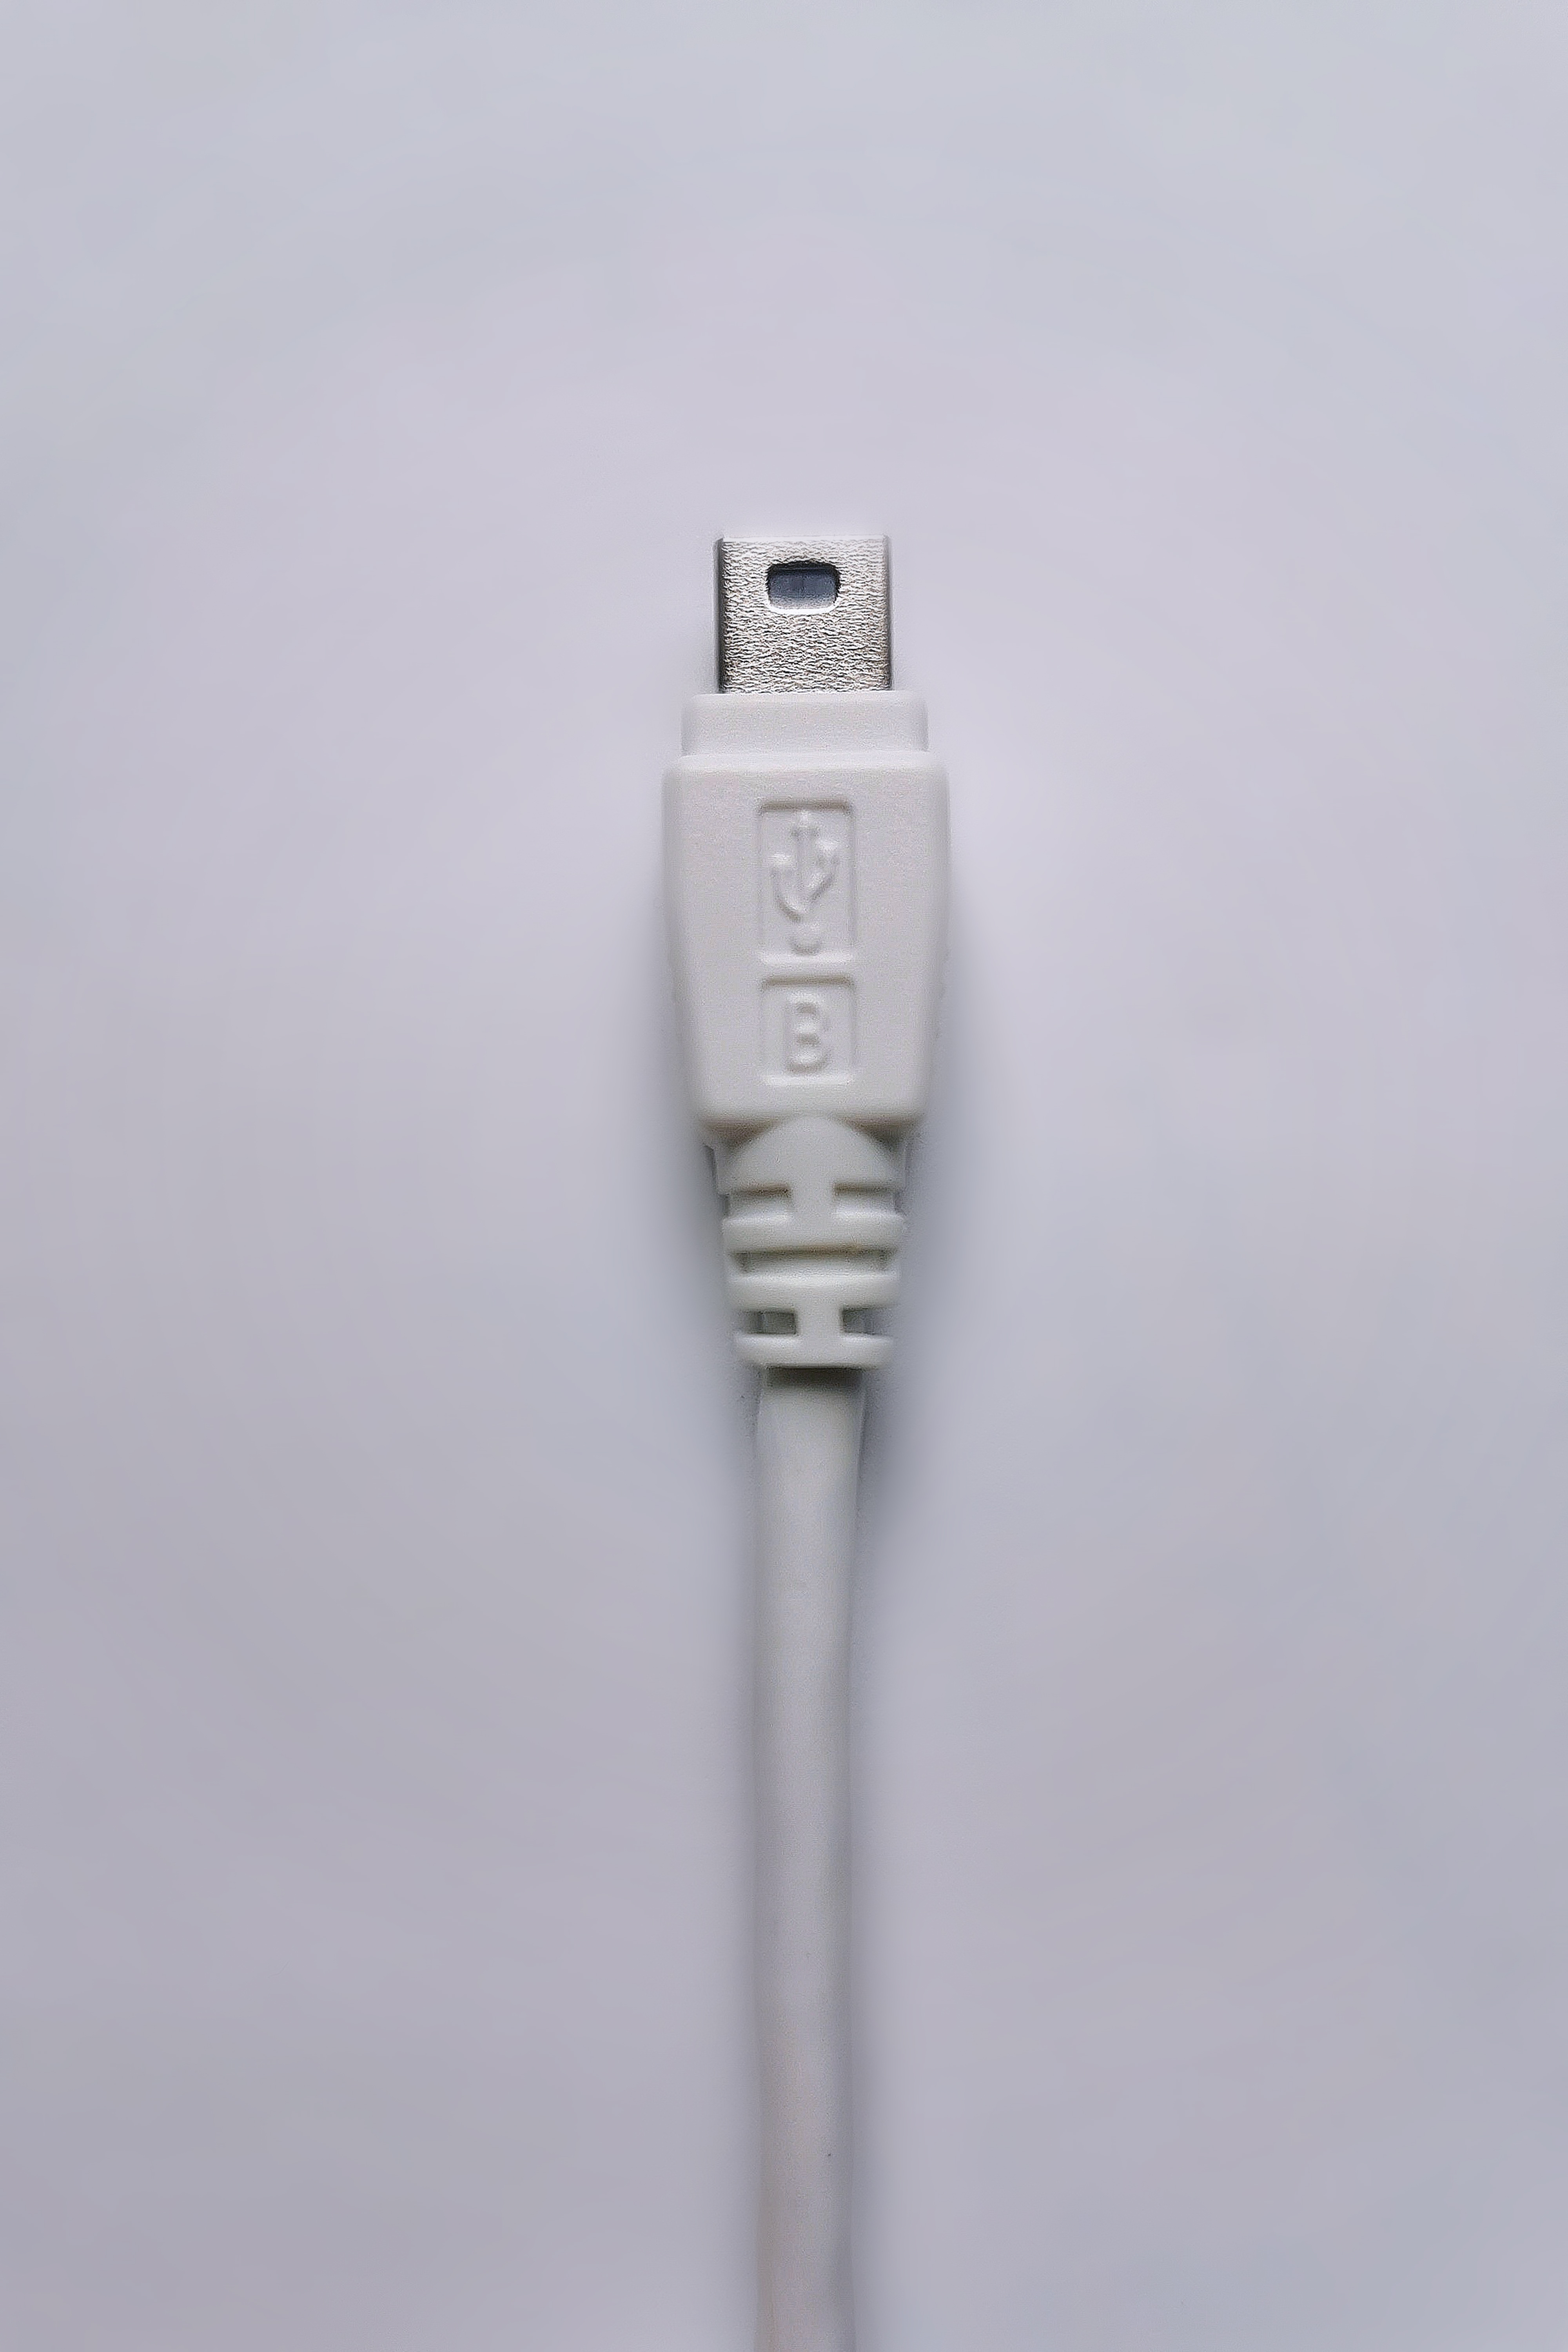 USB Kabel Datenkabel Ravensburger tiptoi Stift Lesestift TipToi Kabellänge130 cm 